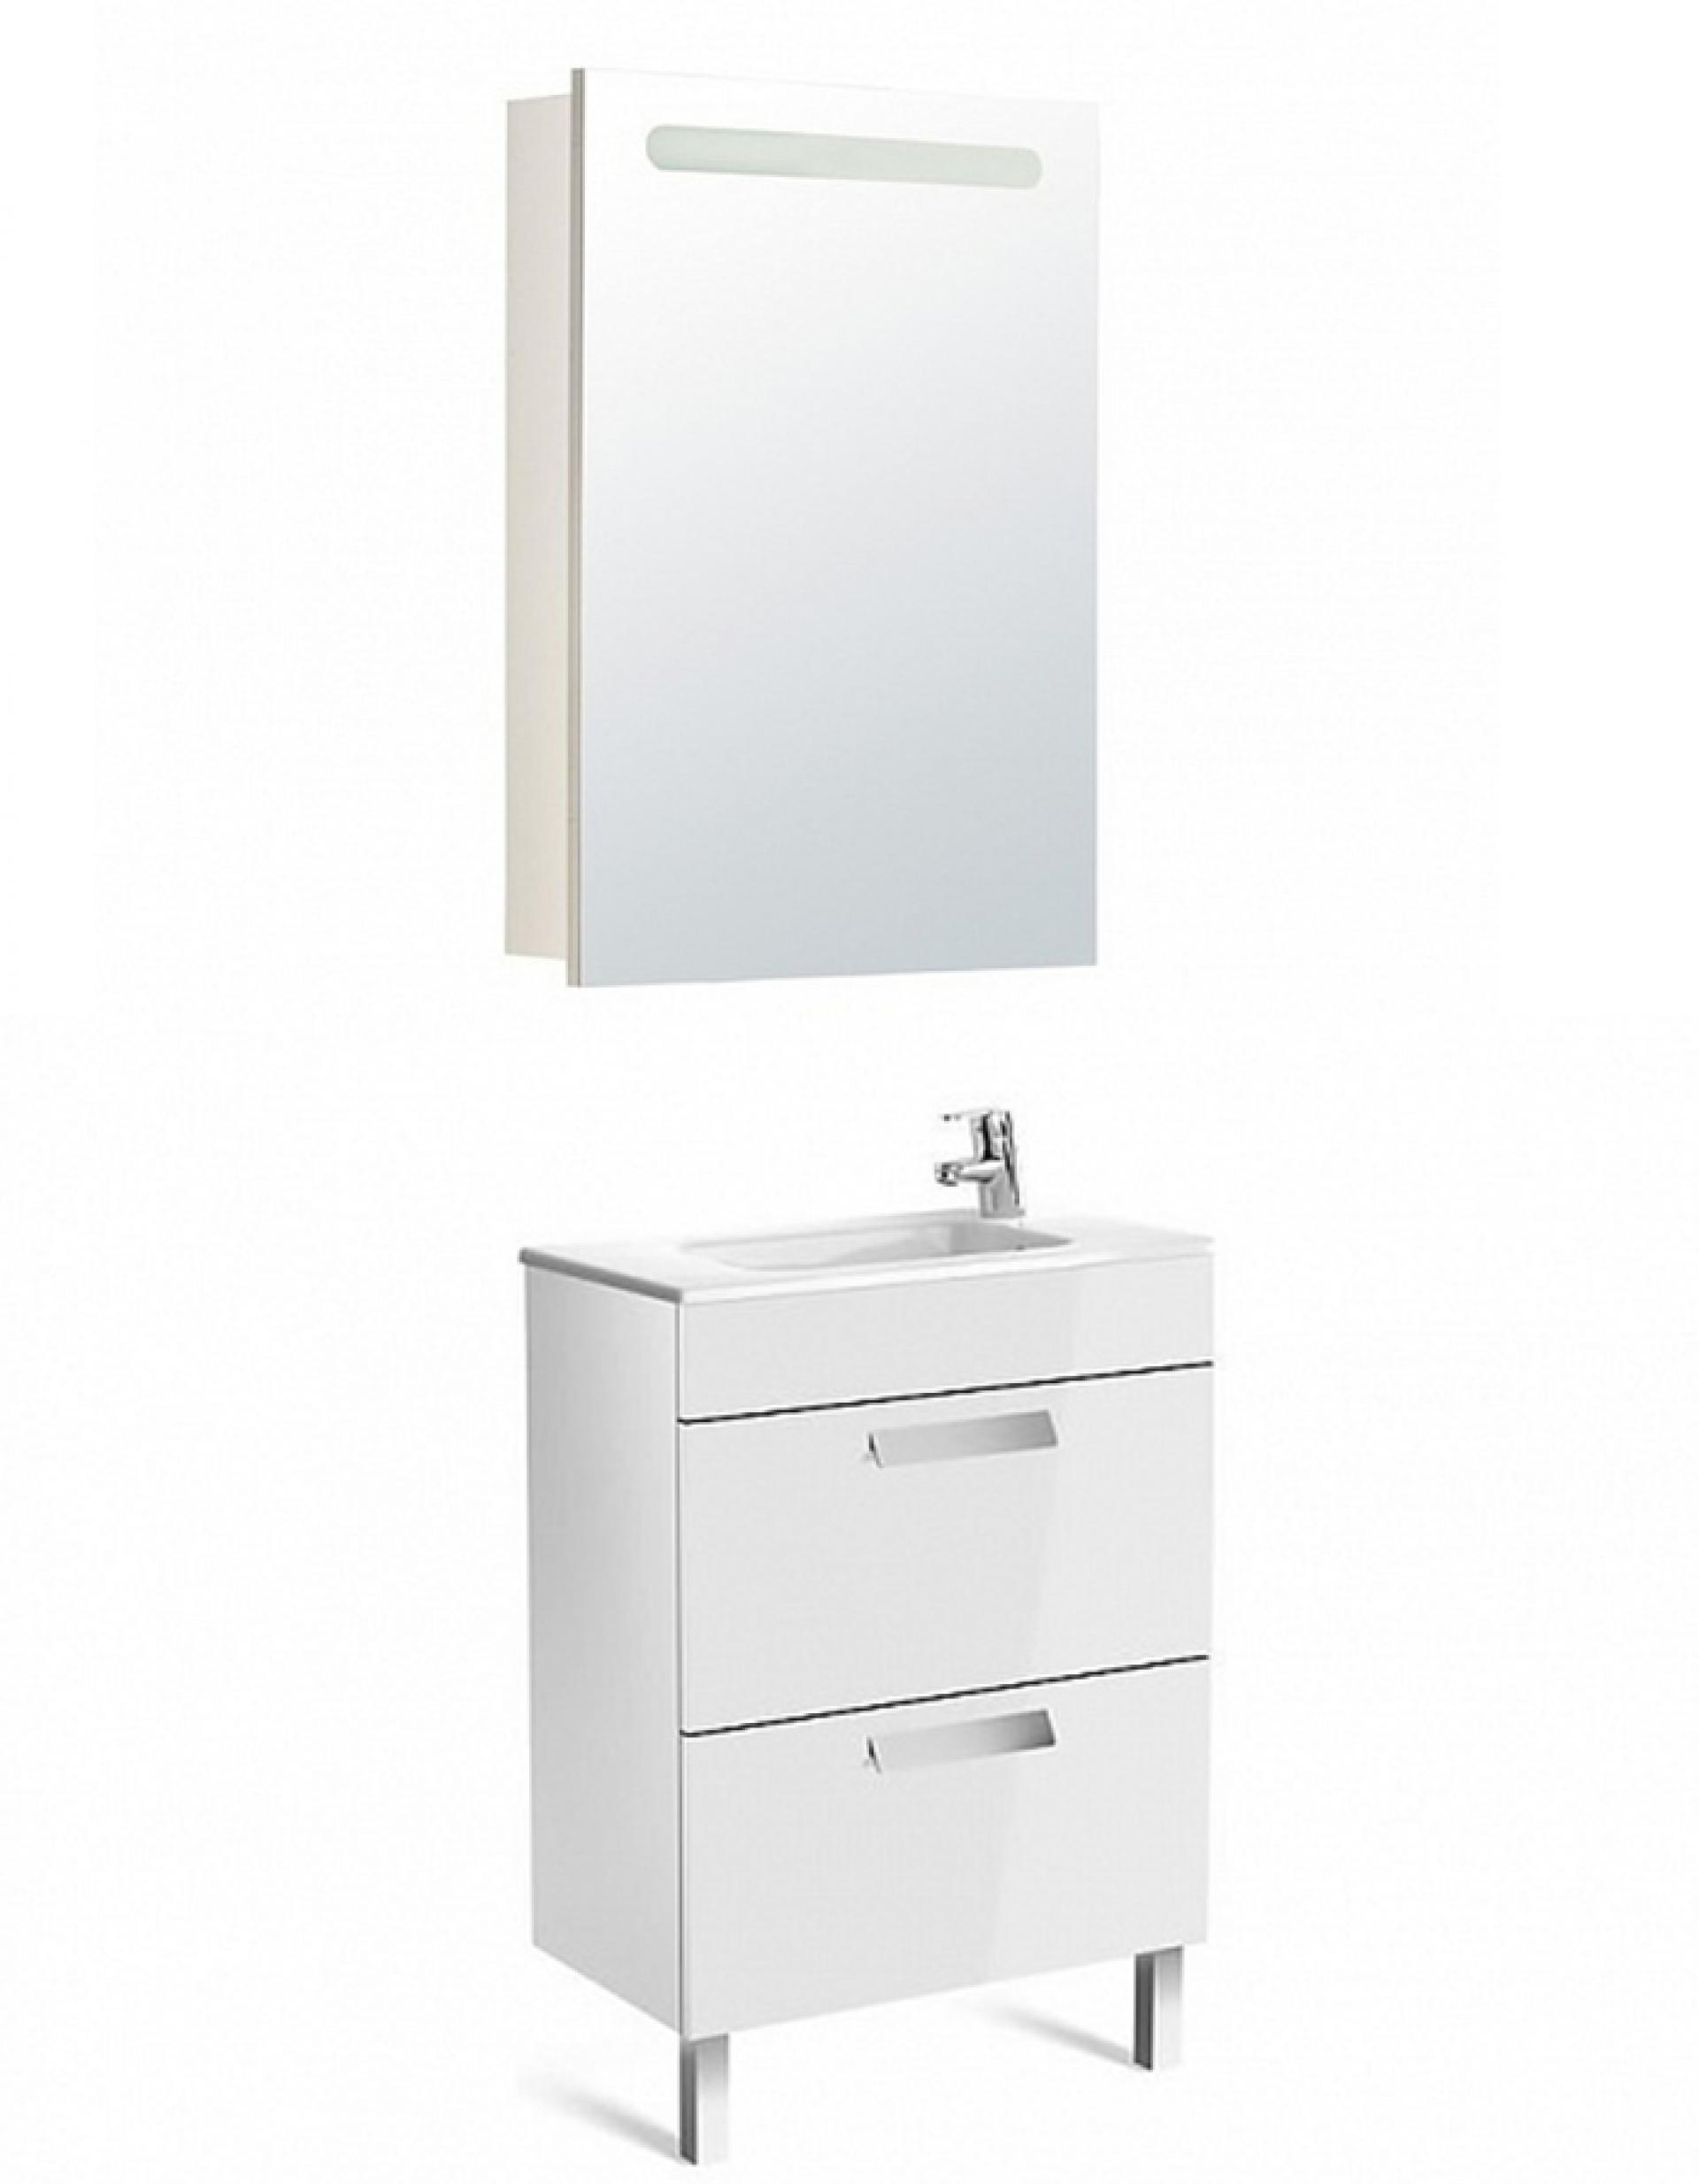 Комплект мебели для ванной Roca Debba 60 см Roca Debba белая (тумба+раковина+зеркало правое)